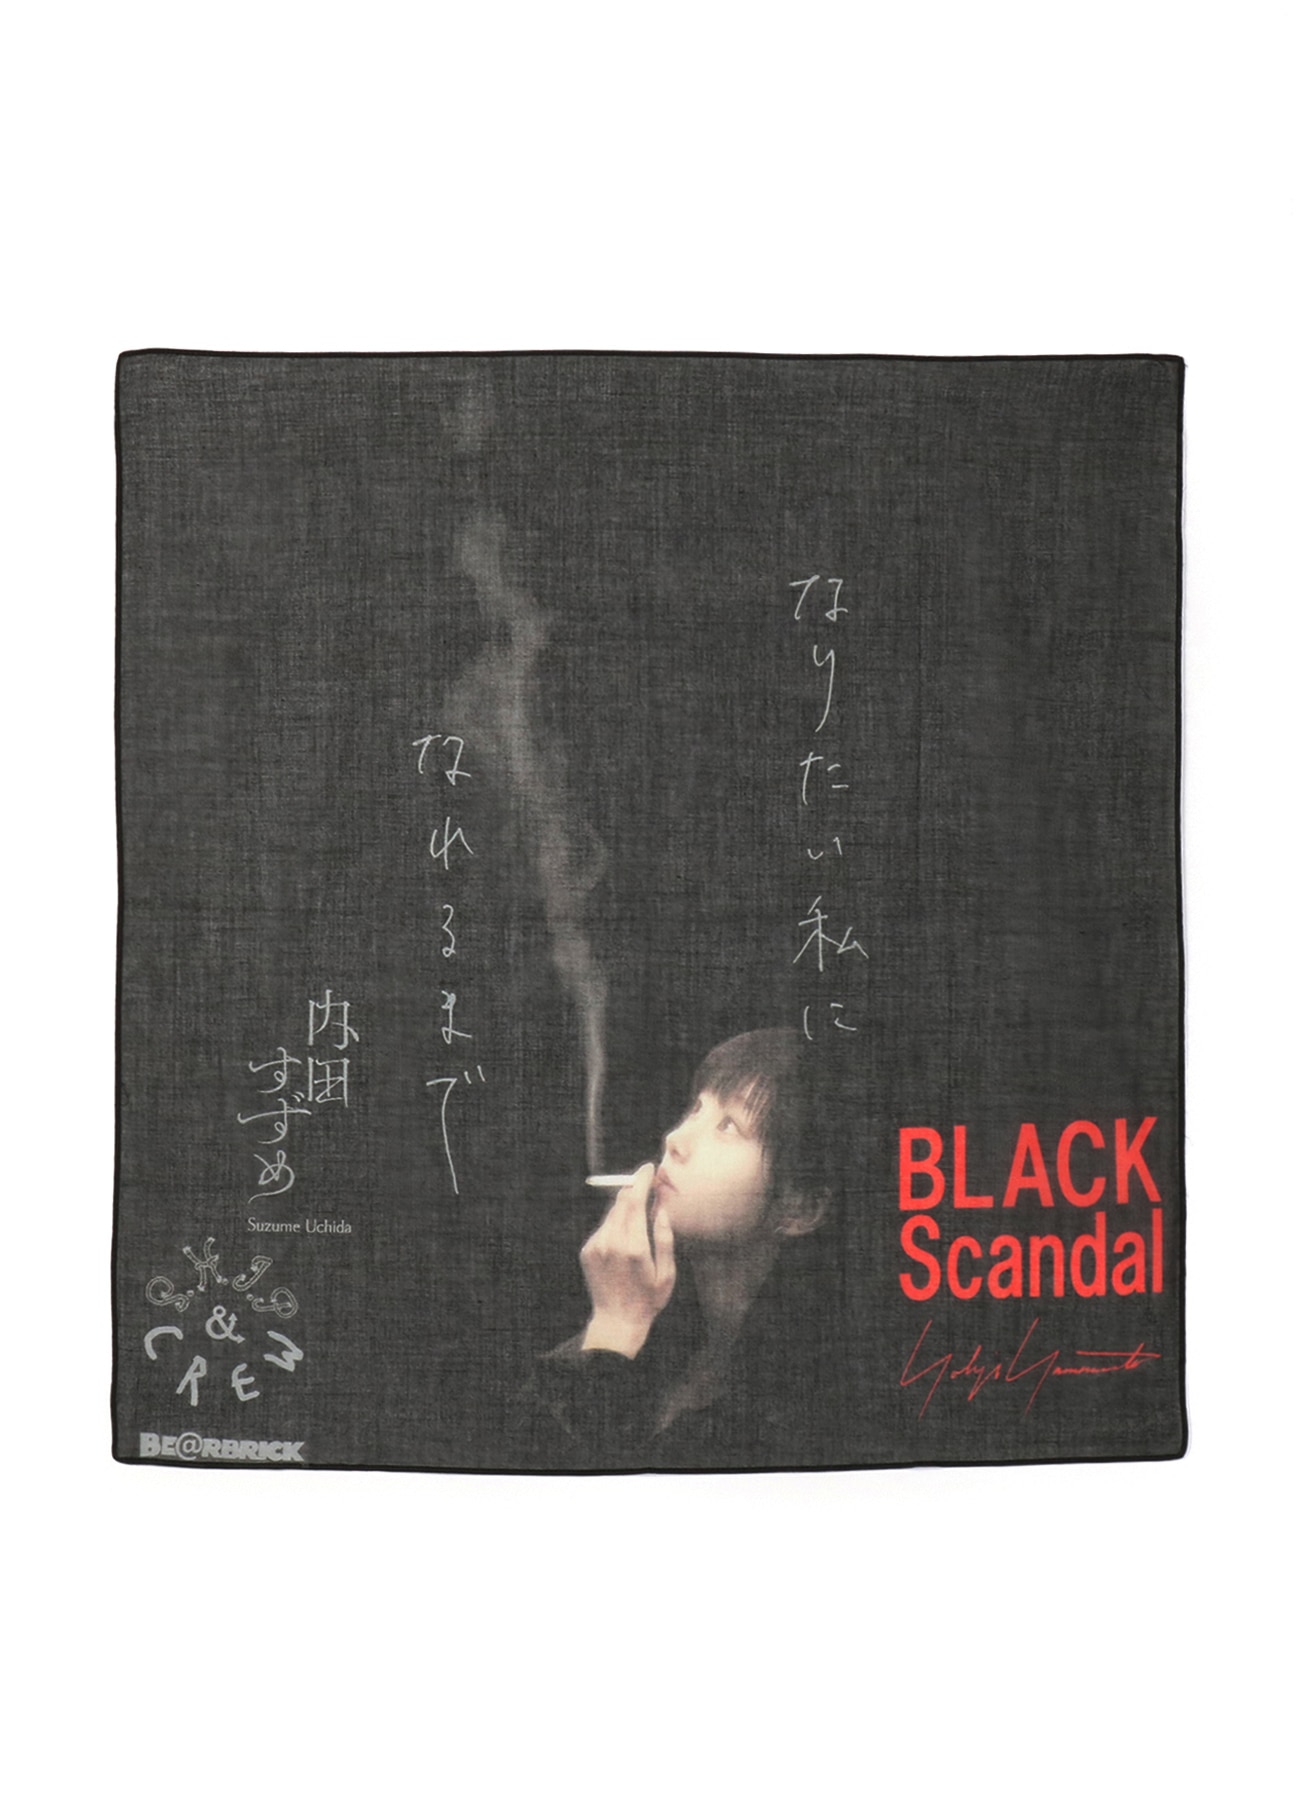 BLACK Scandal Yohji Yamamoto 内田すずめ